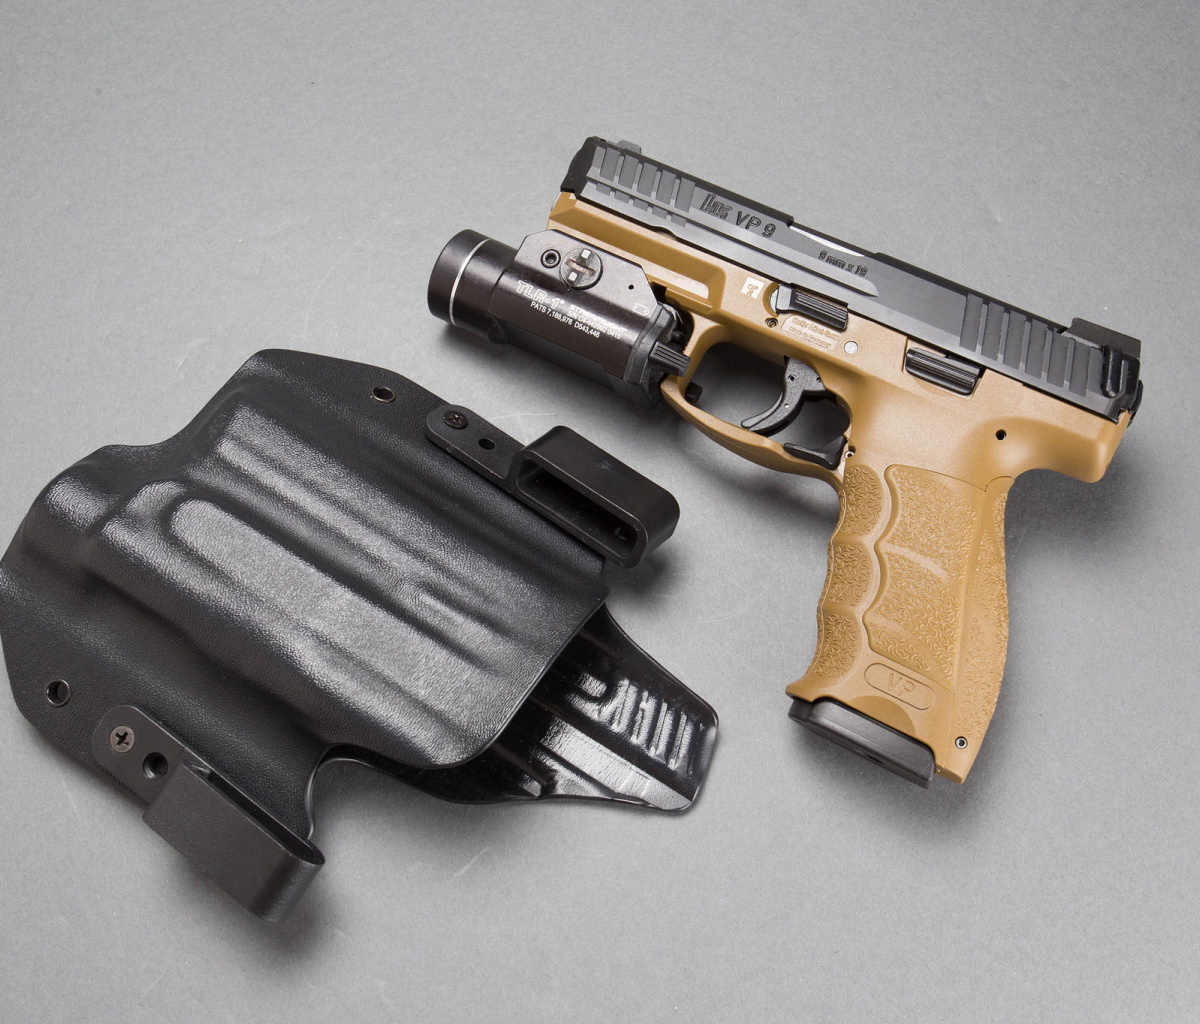 Das Pistols Heckler & Koch 9mm Wallpaper 1200x1024